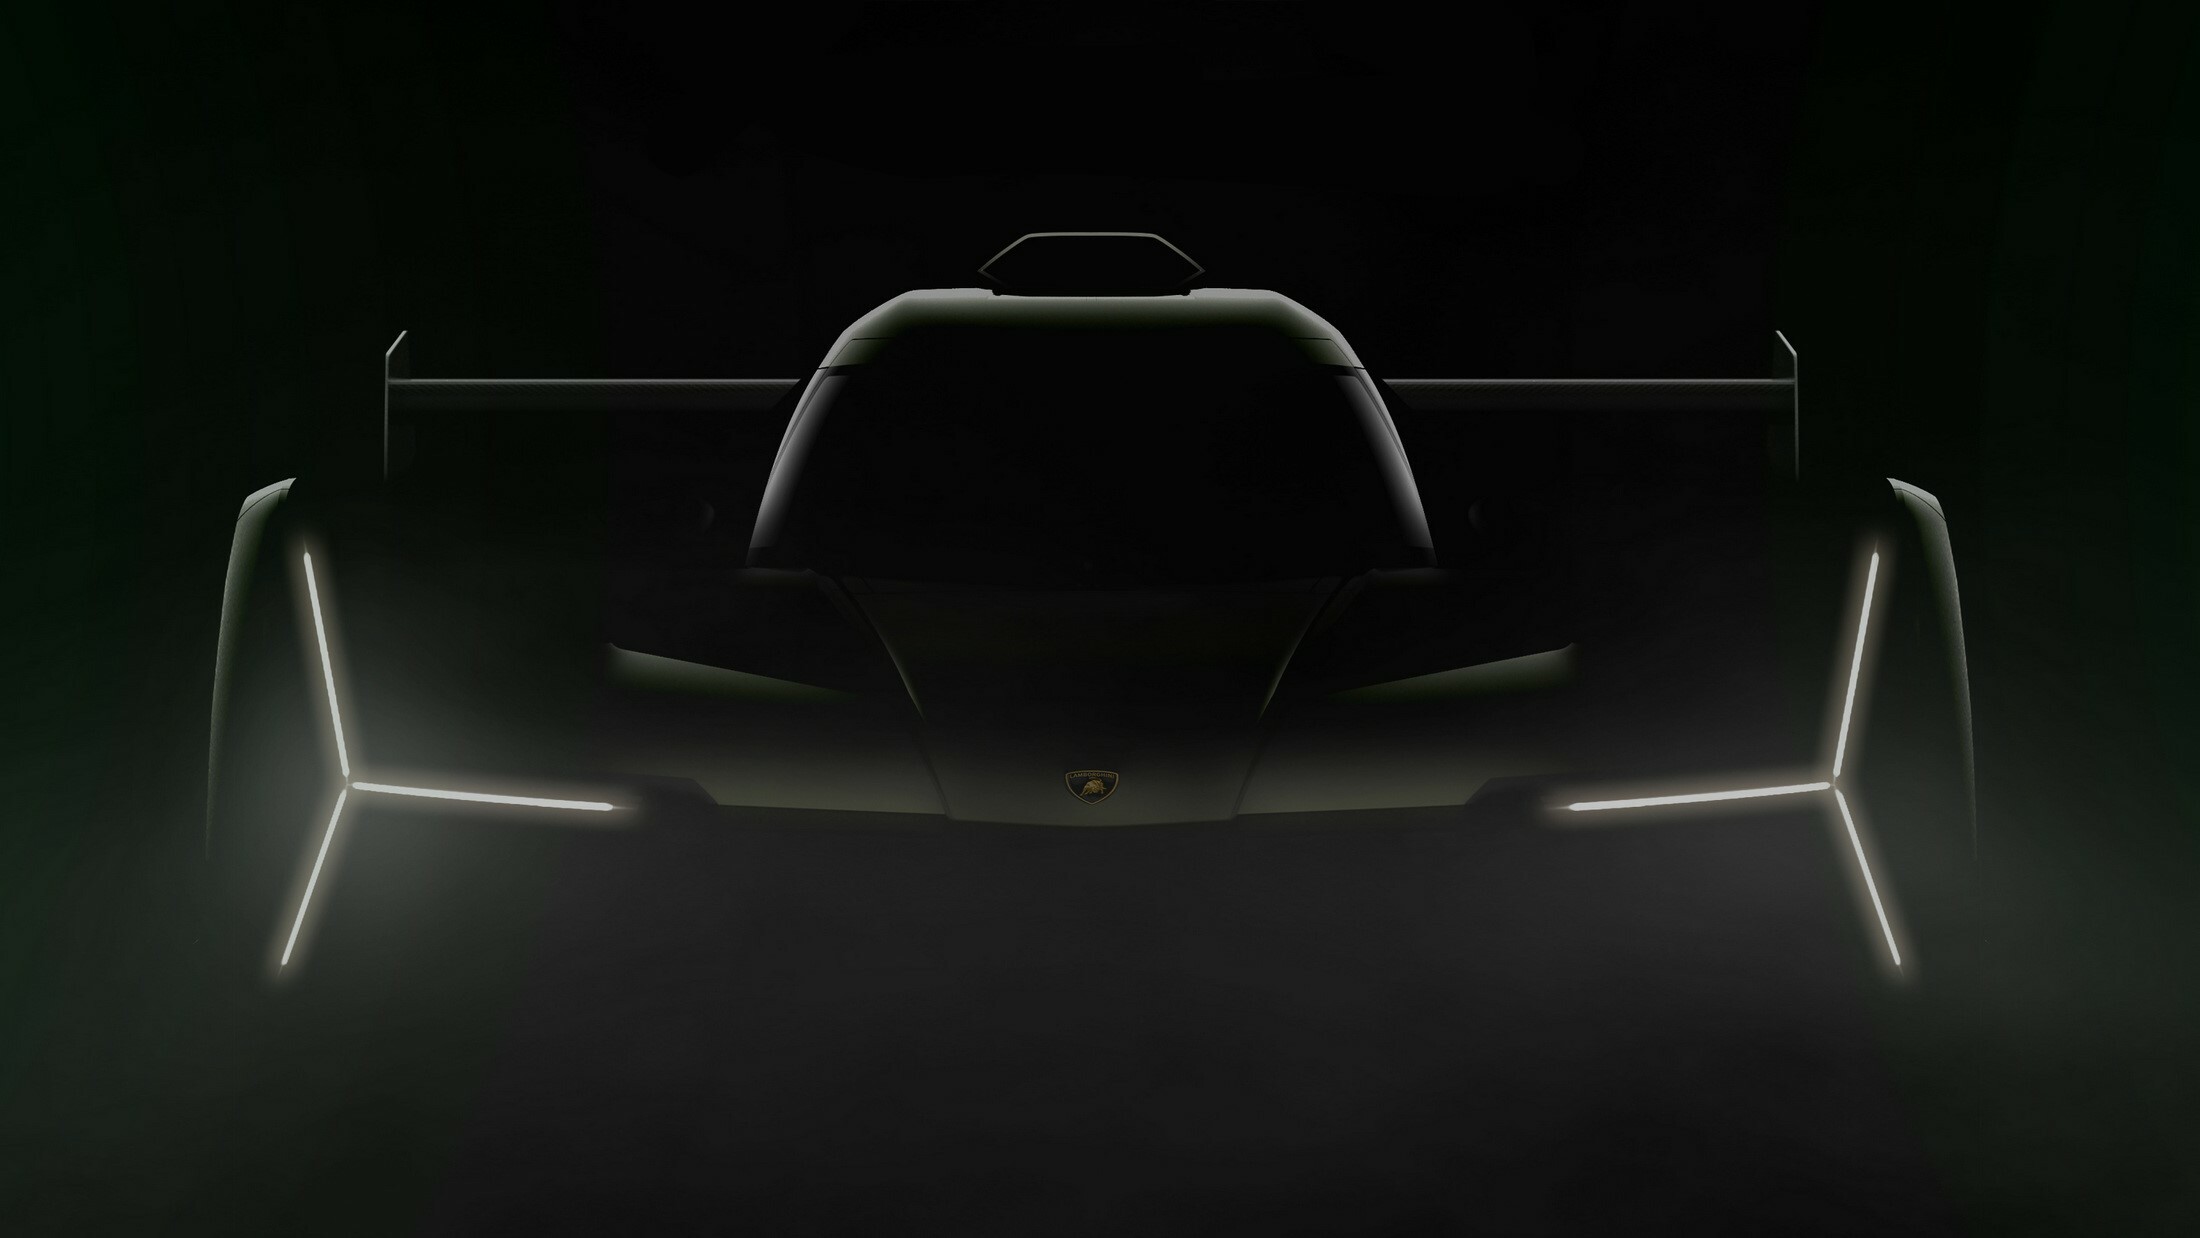 When supreme power meets the best - Lamborghini Muscat